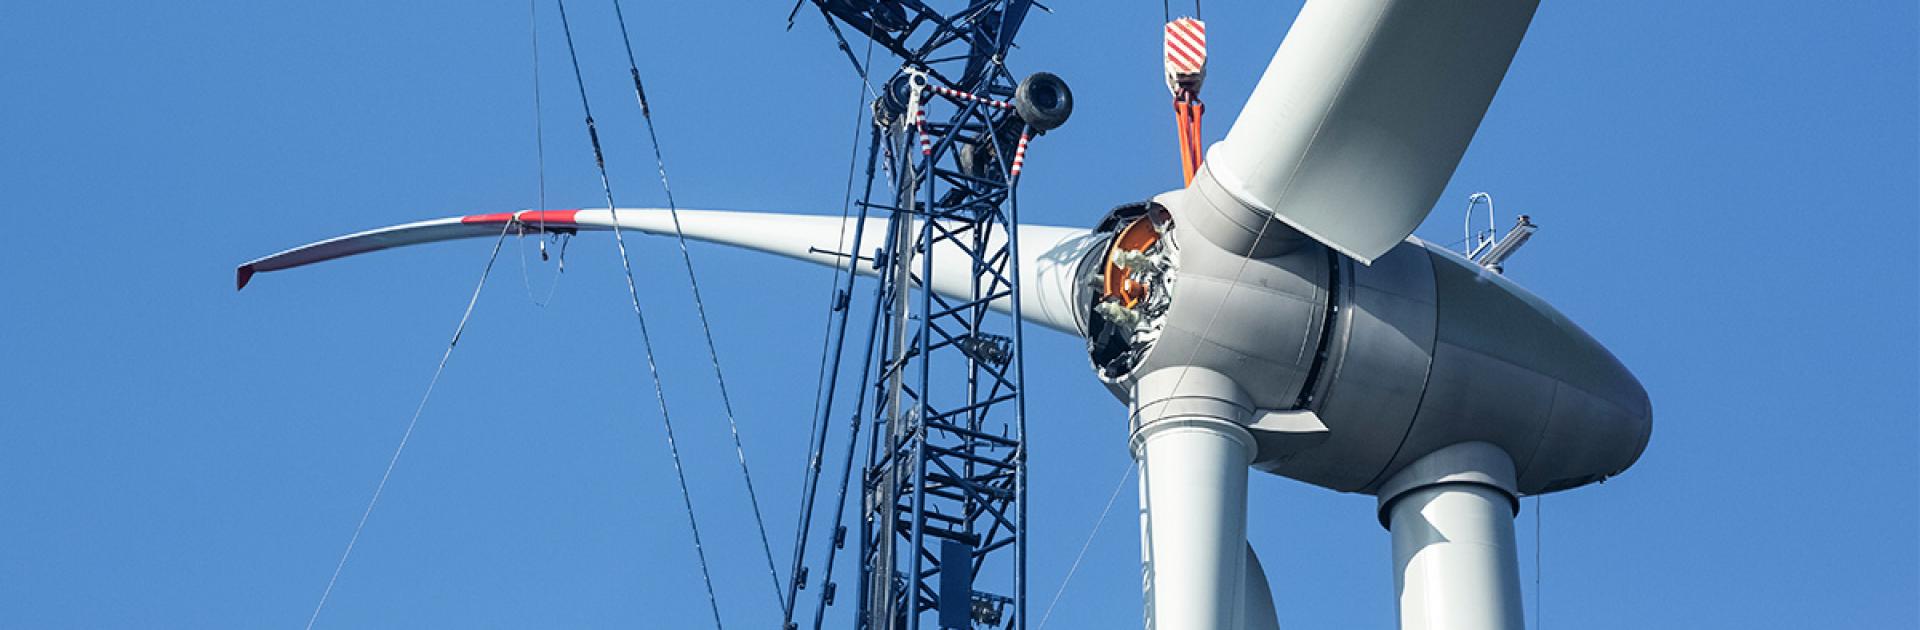 Vertraging aanleg en uitbreiding windparken door uitspraak Raad van State